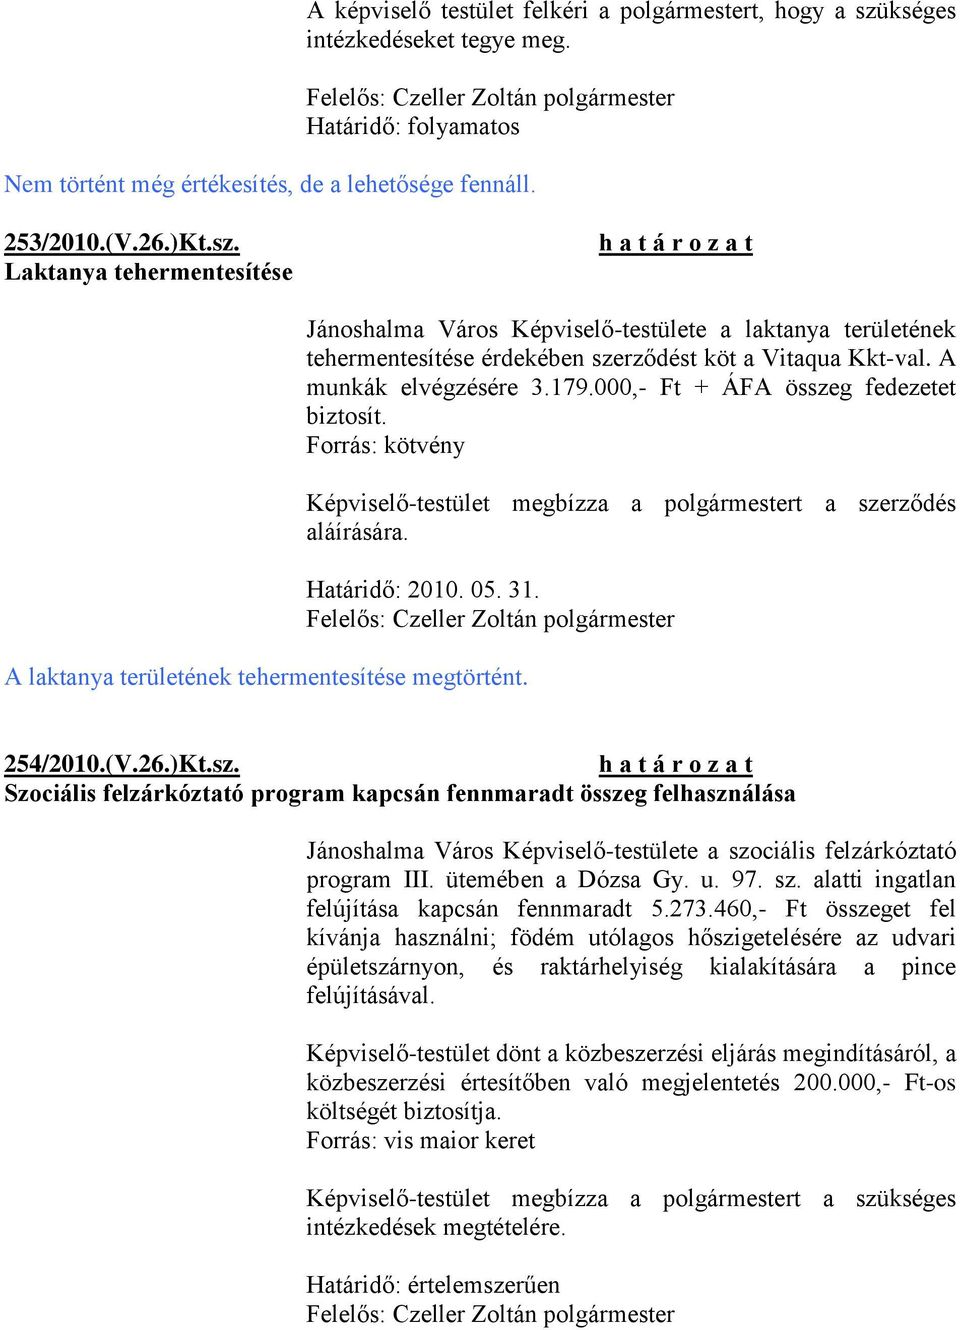 Laktanya tehermentesítése Jánoshalma Város Képviselő-testülete a laktanya területének tehermentesítése érdekében szerződést köt a Vitaqua Kkt-val. A munkák elvégzésére 3.179.